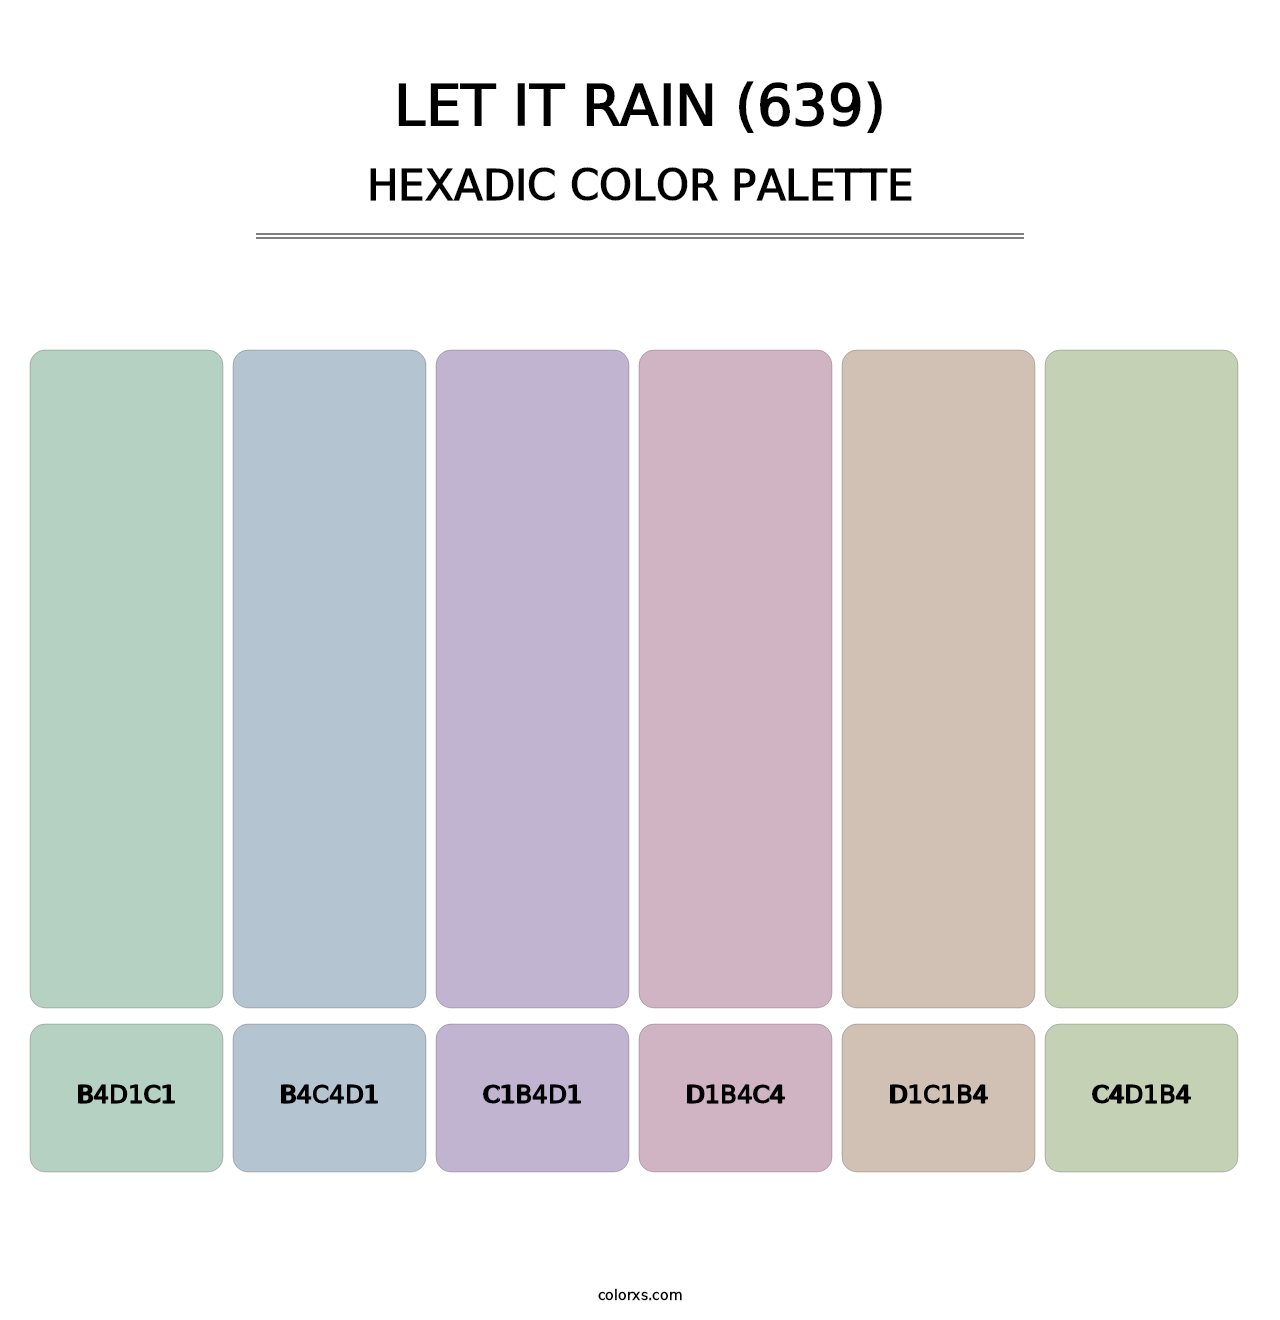 Let It Rain (639) - Hexadic Color Palette